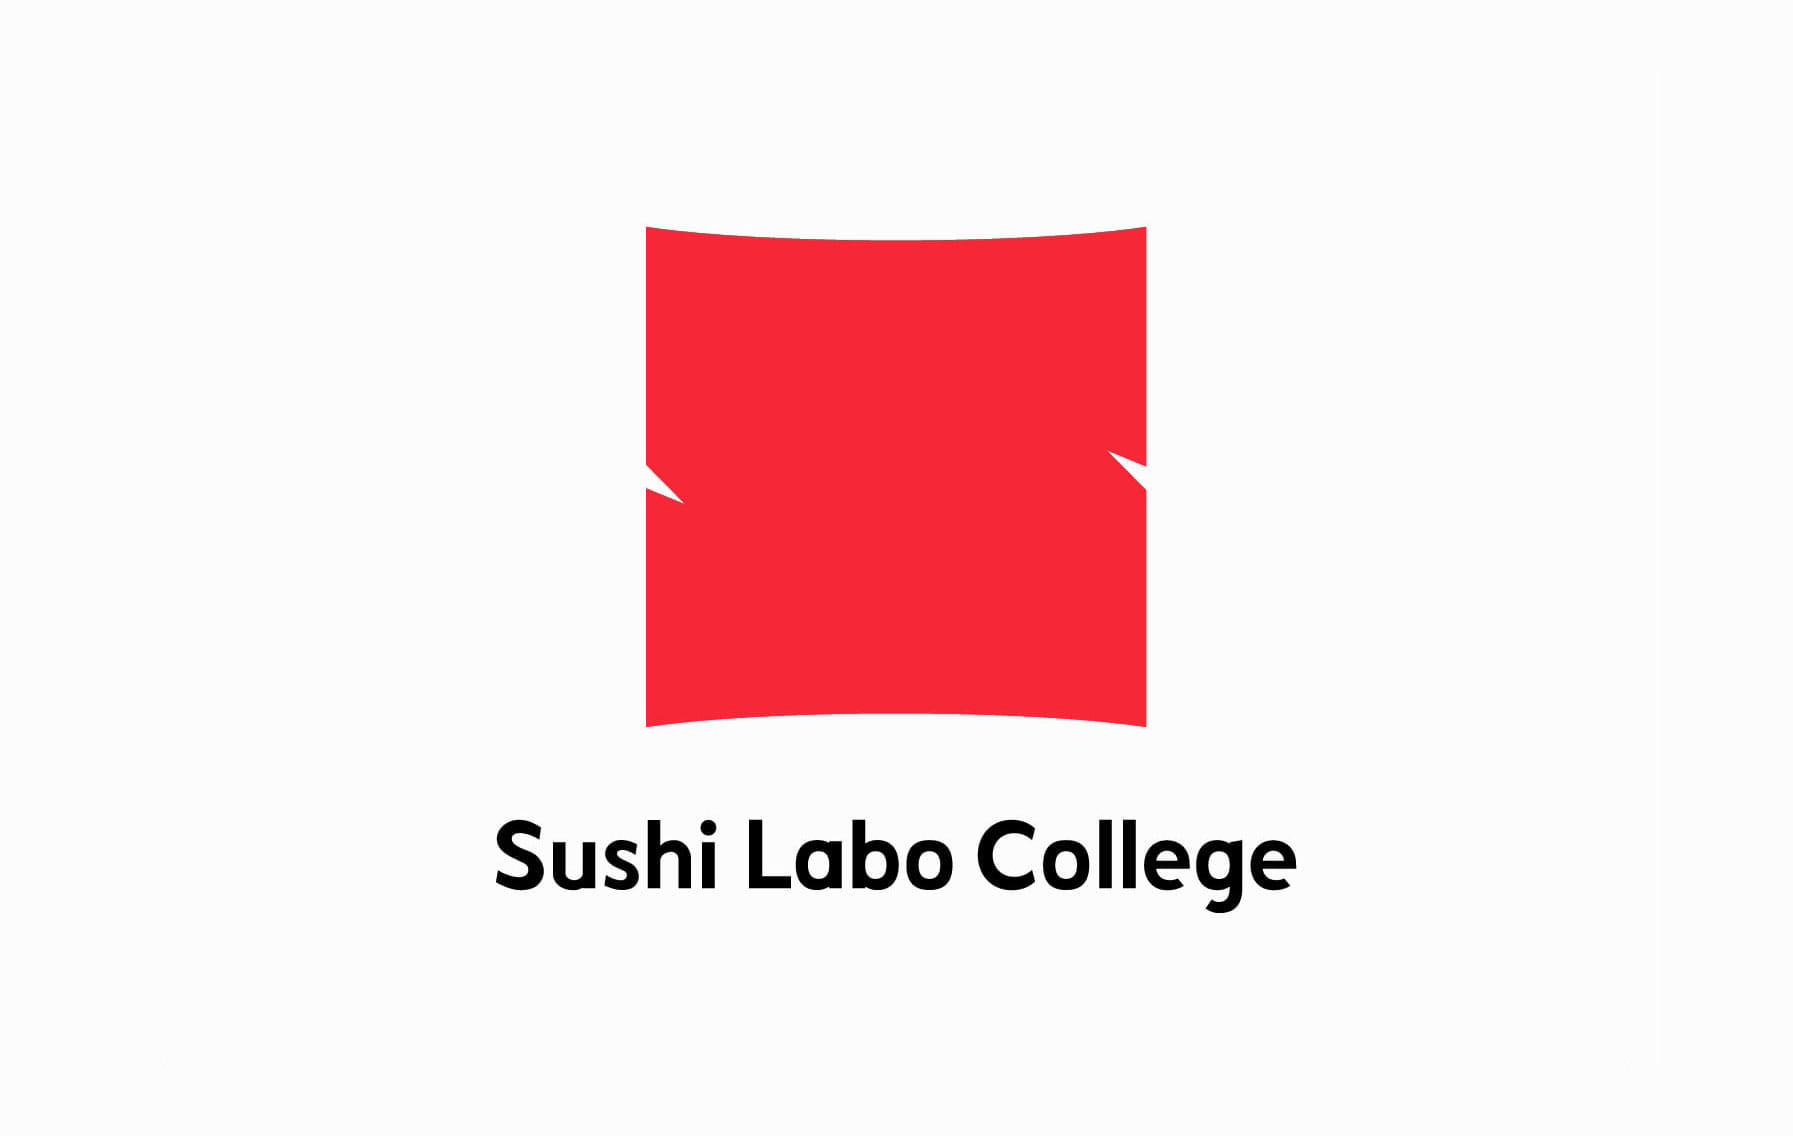 SUSHI LABO COLLEGE